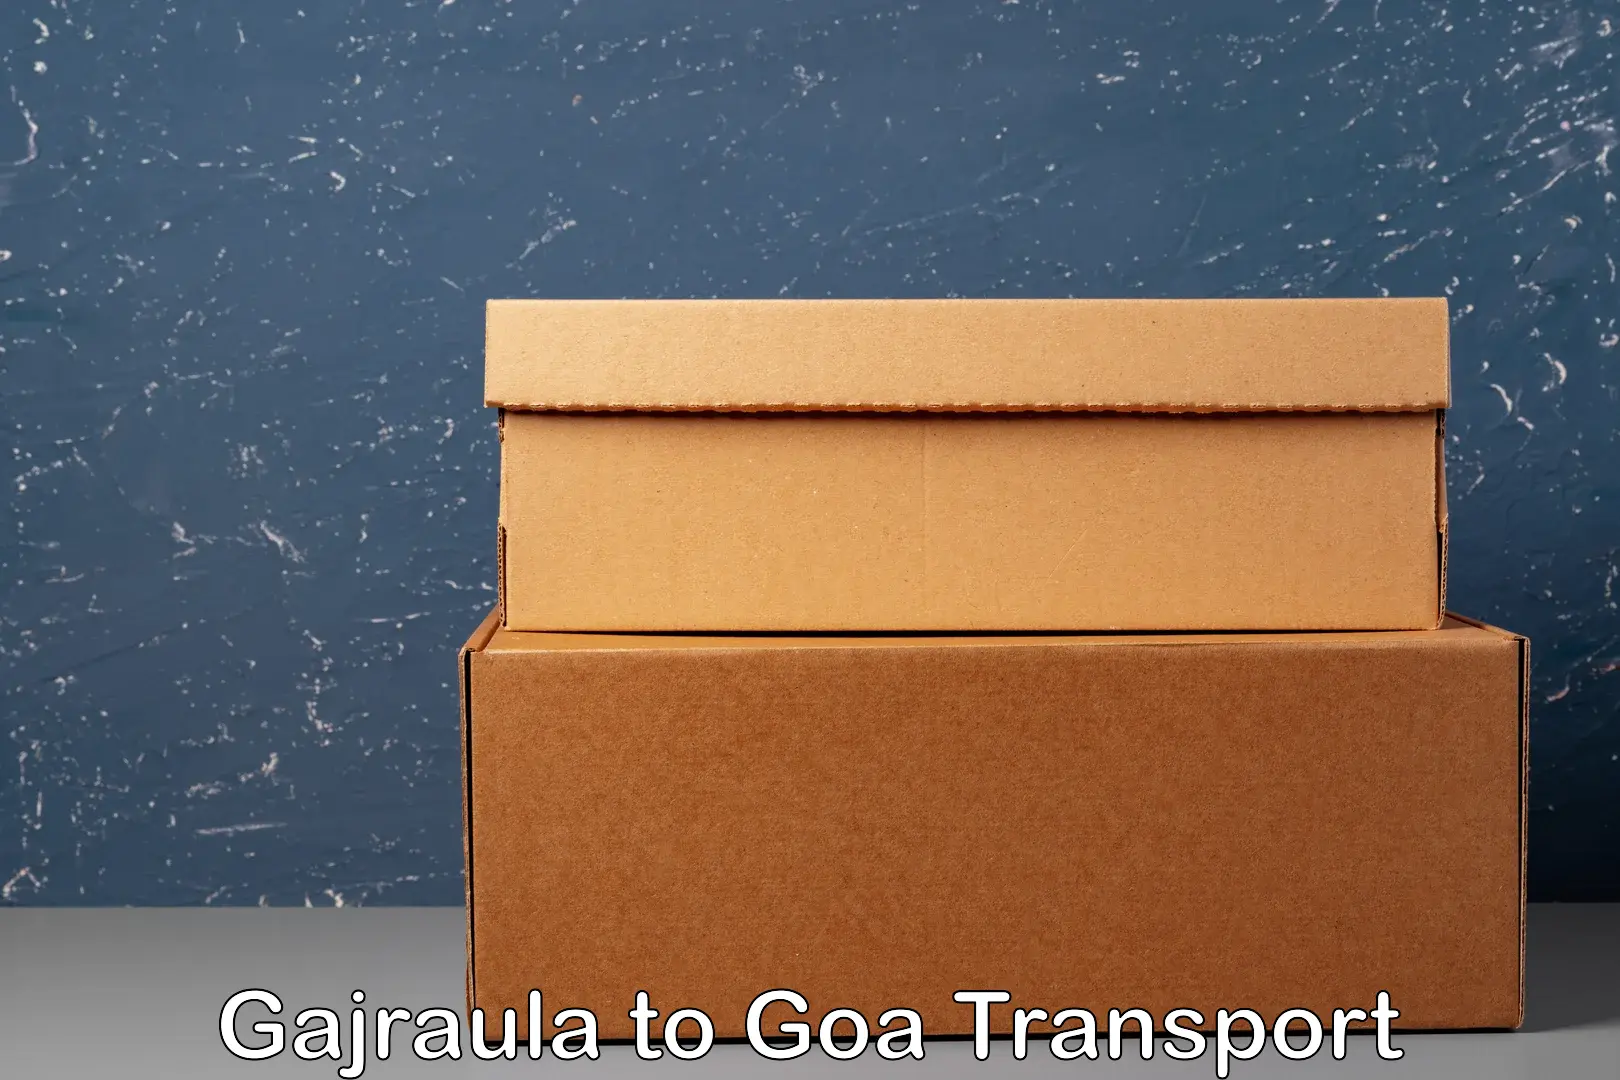 Truck transport companies in India in Gajraula to Panaji